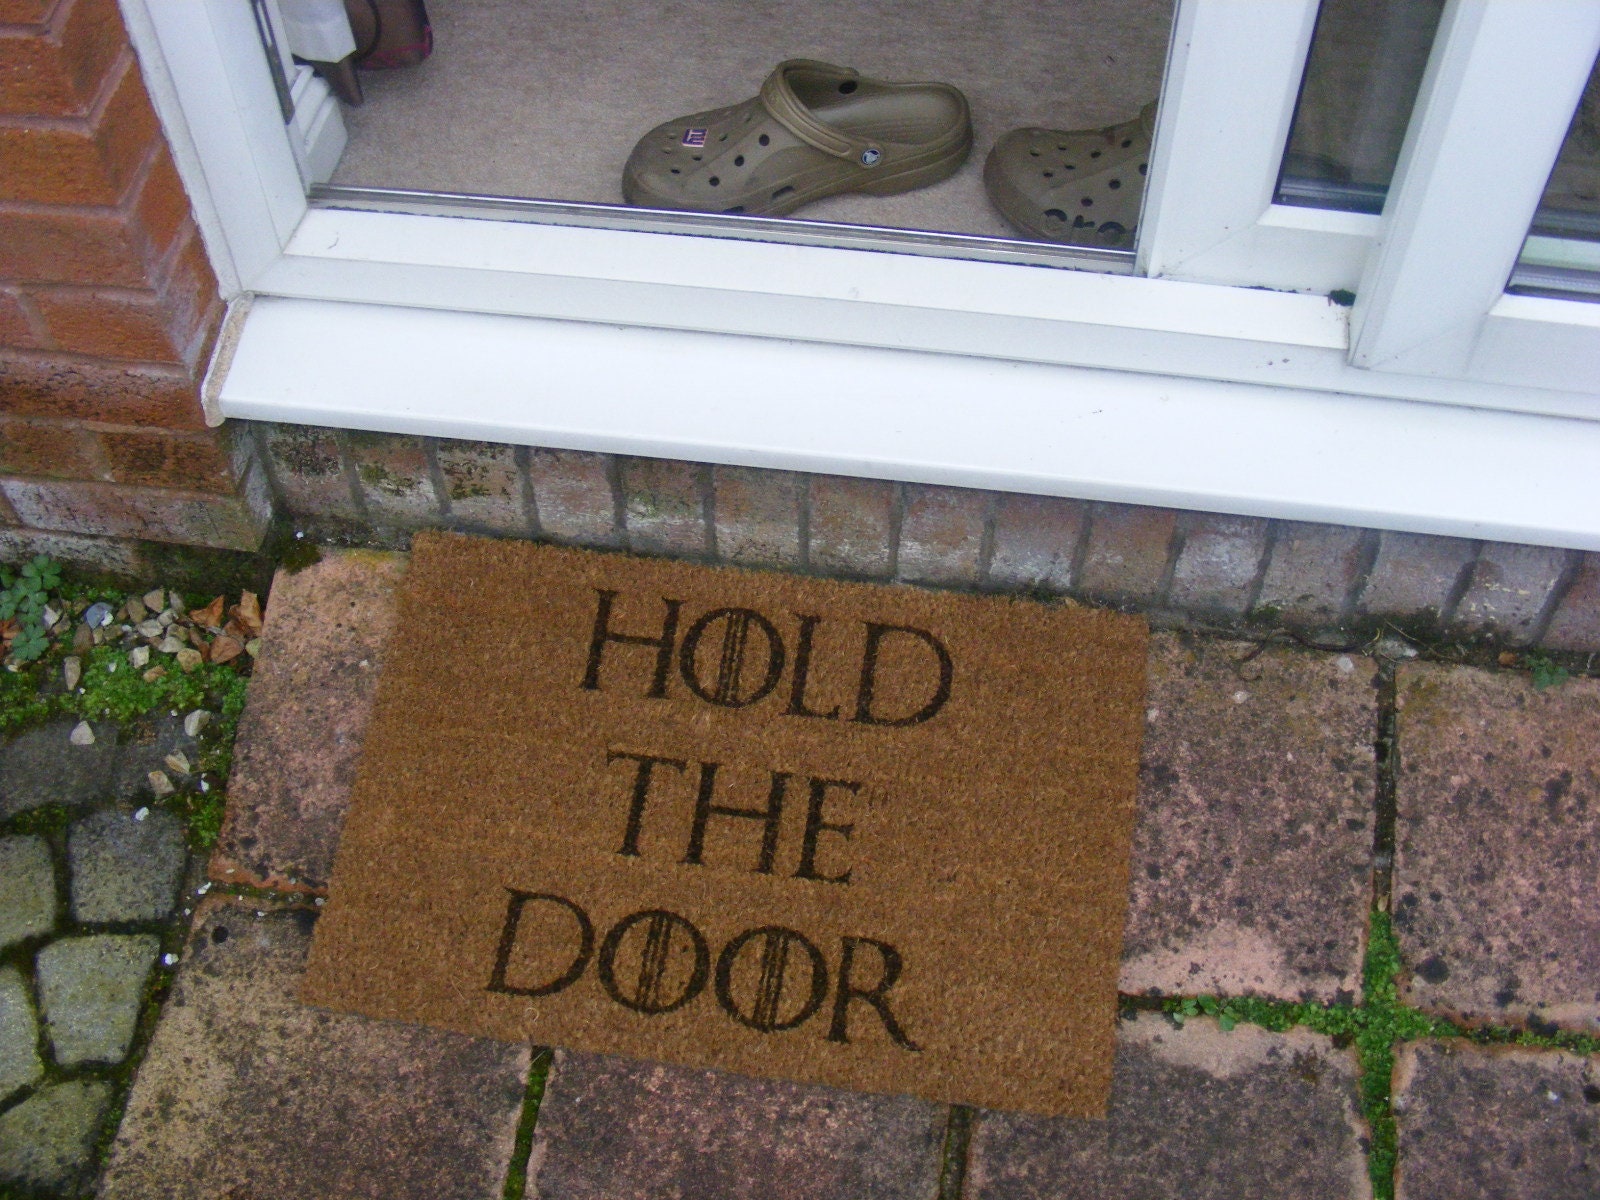 GAME OF THRONES HOLD THE DOOR WELCOME COIR FRONT DOOR MAT GIFT IDEA PRESENT UK 